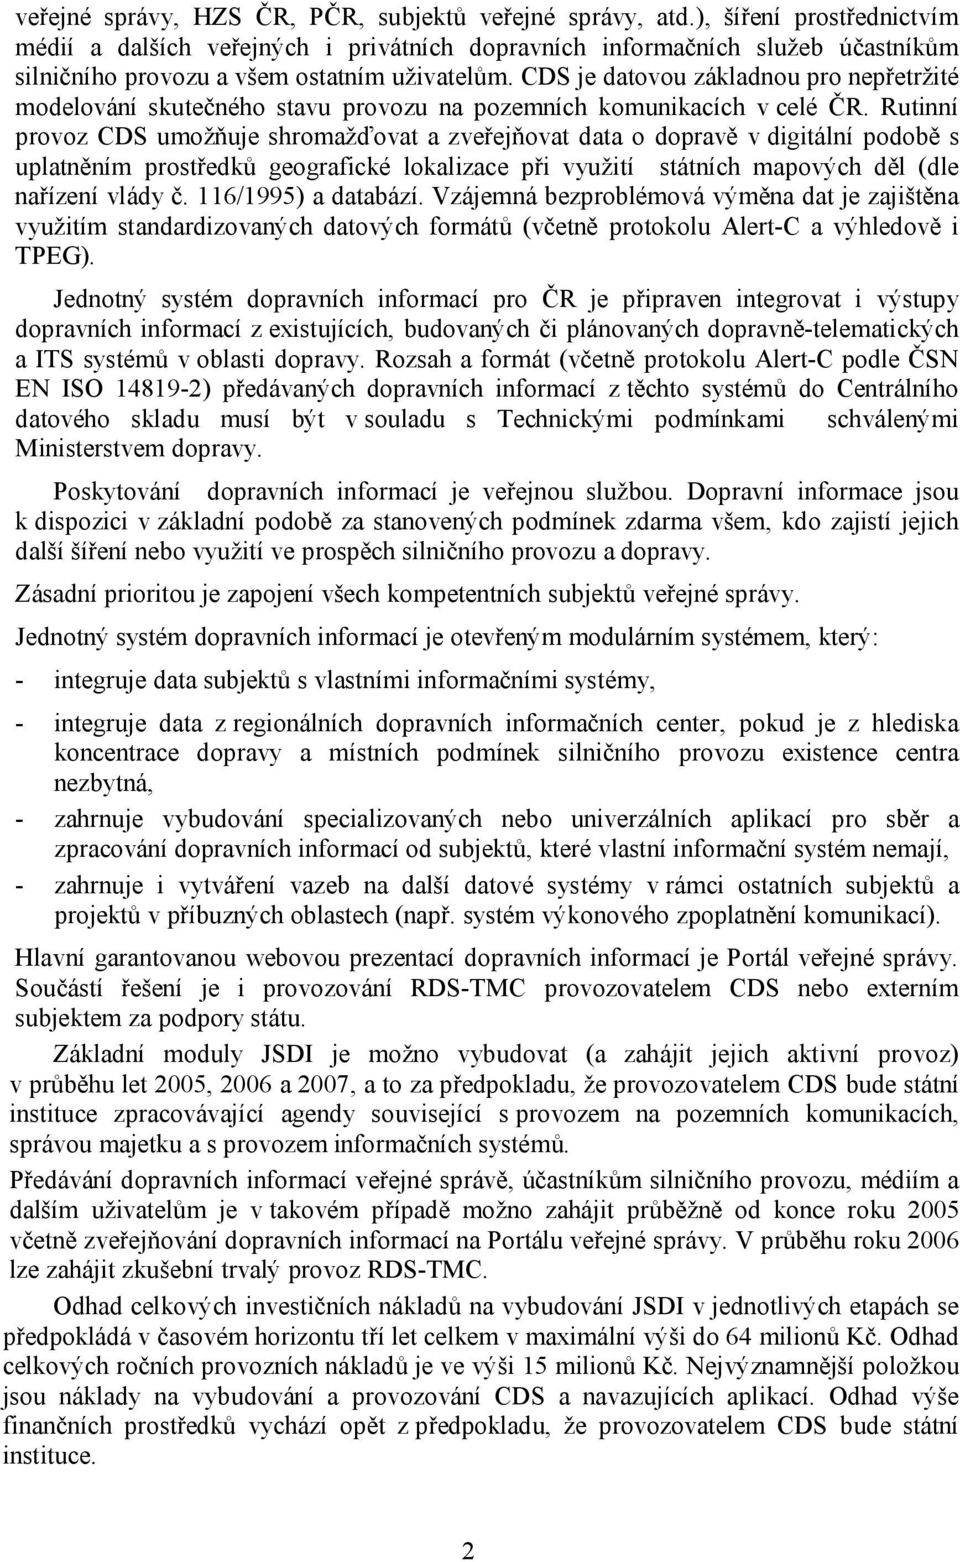 je datovou základnou pro nepřetržité modelování skutečného stavu provozu na pozemních komunikacích v celé ČR.